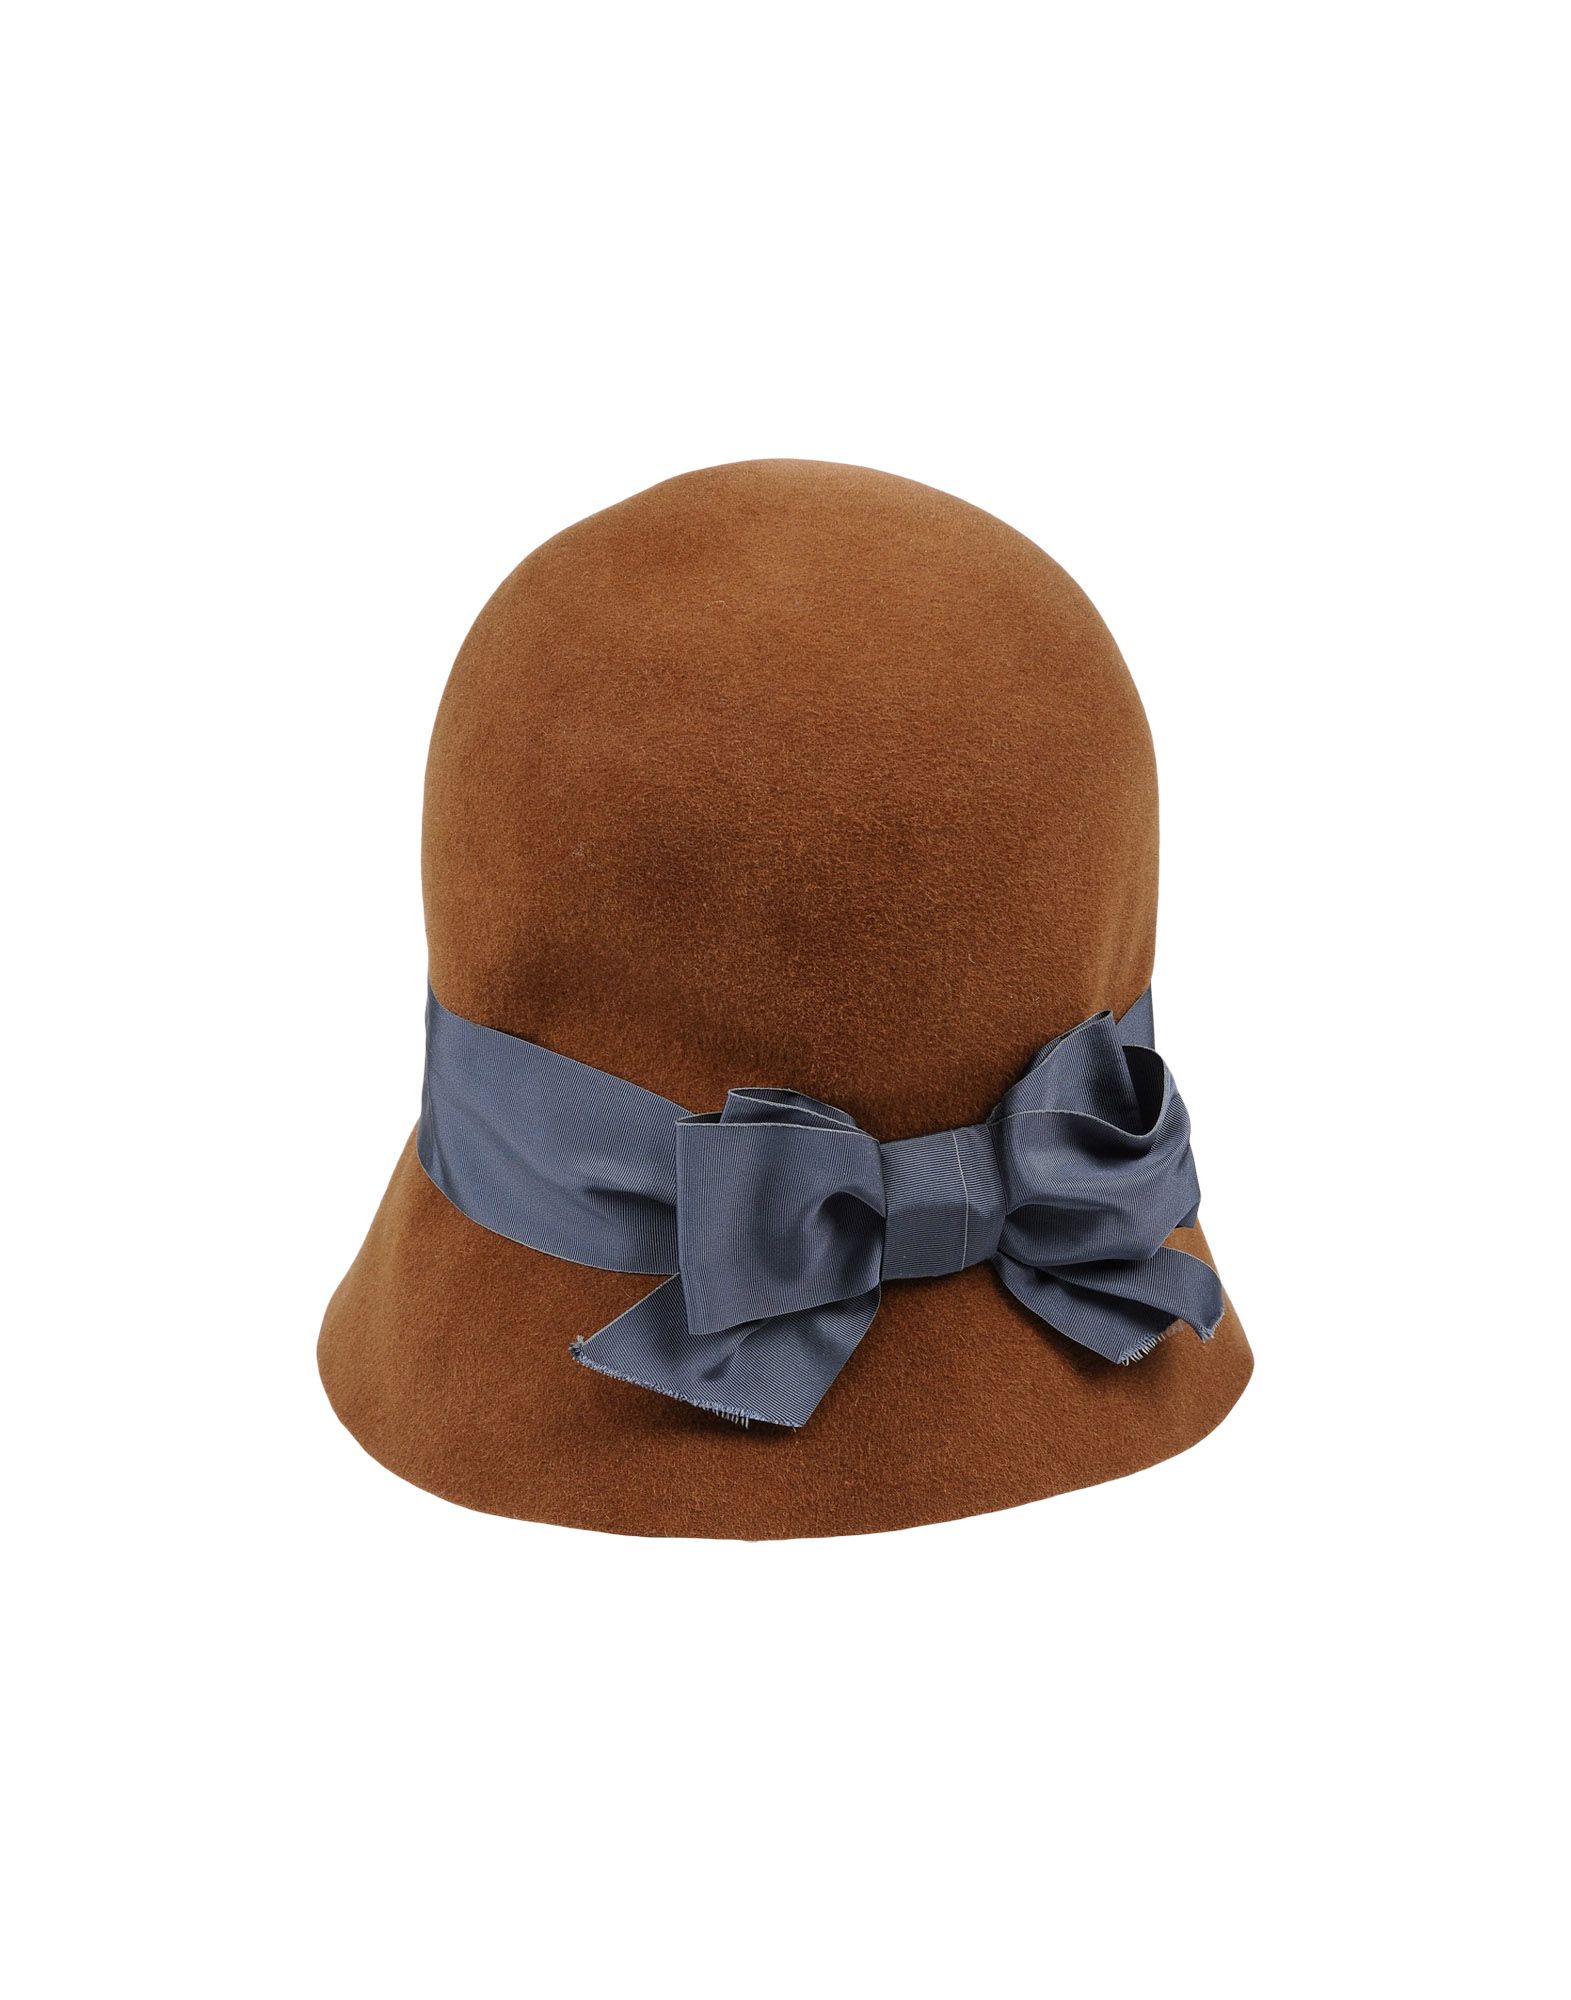 《送料無料》PATRIZIA FABRI レディース 帽子 ブラウン 56 紡績繊維